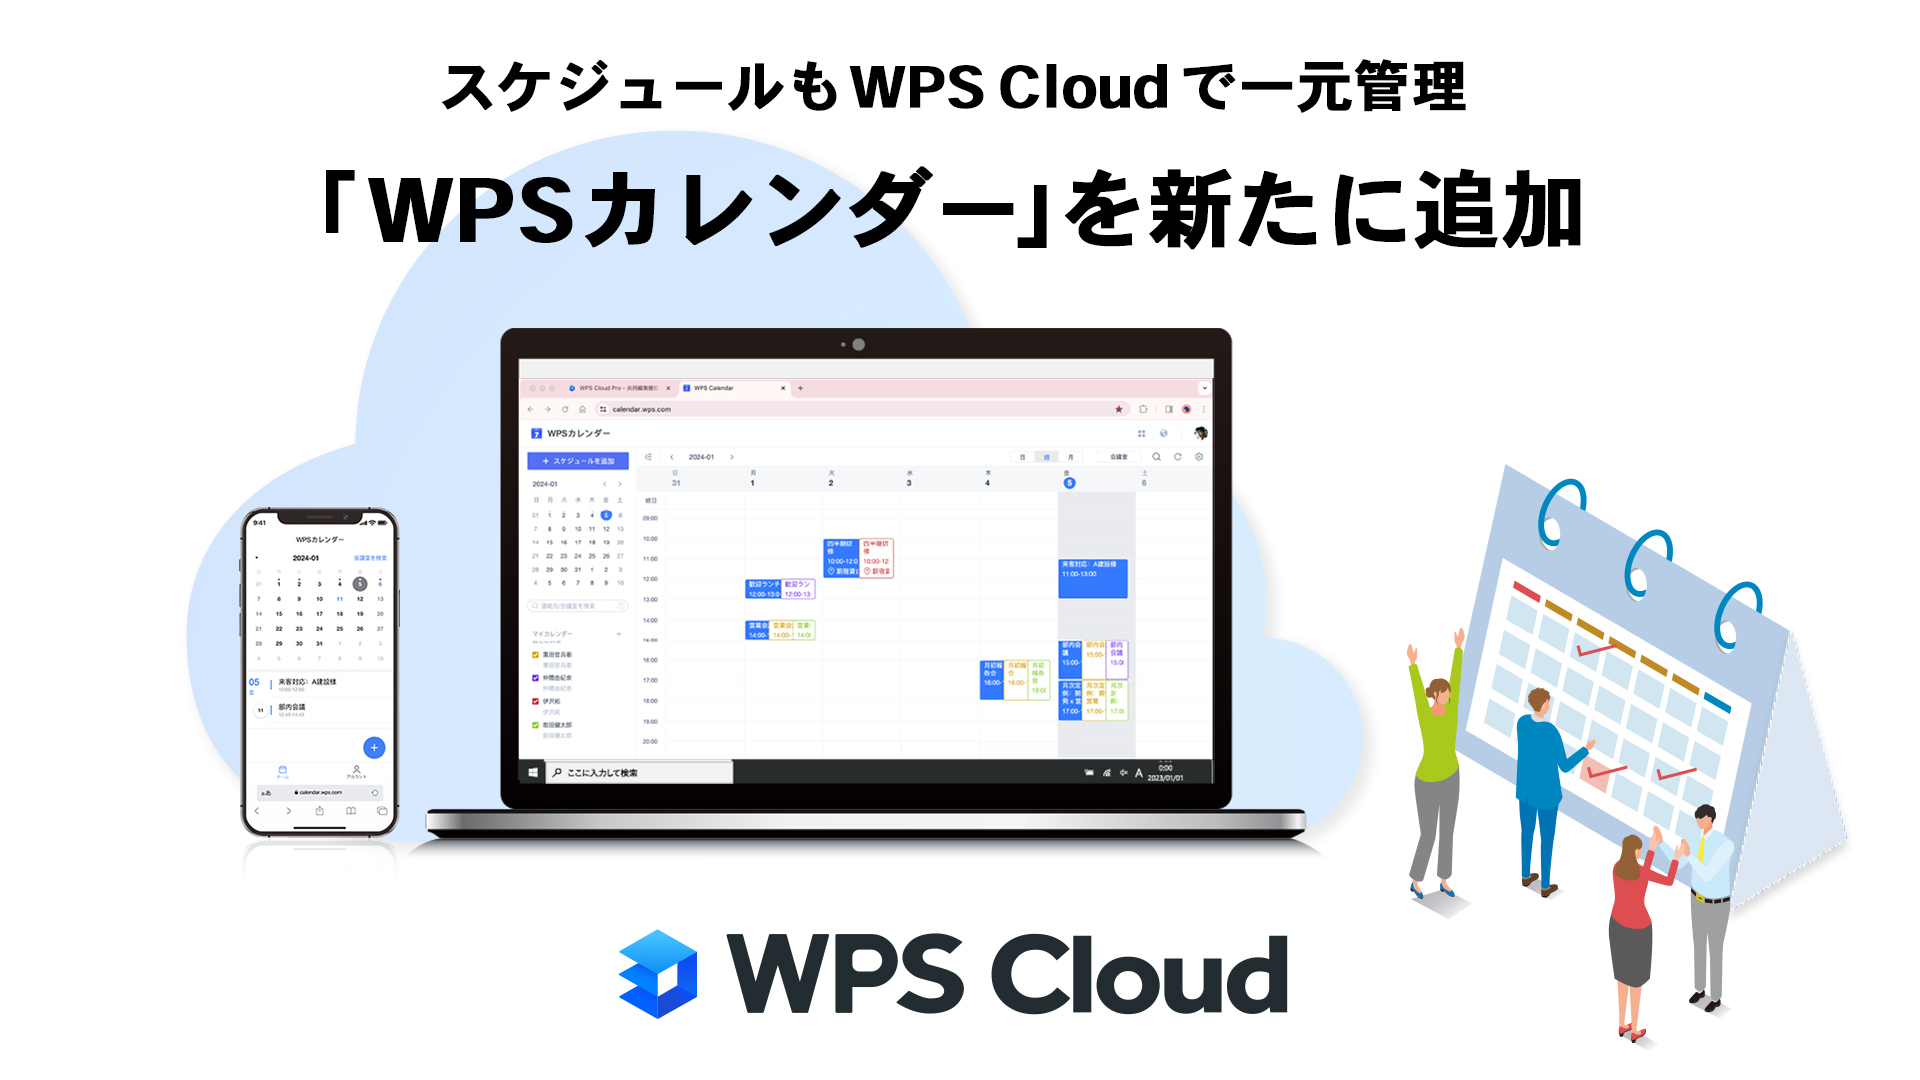 クラウド型オフィスソフト「WPS Cloud」「WPS Cloud Pro」にカレンダー機能を追加